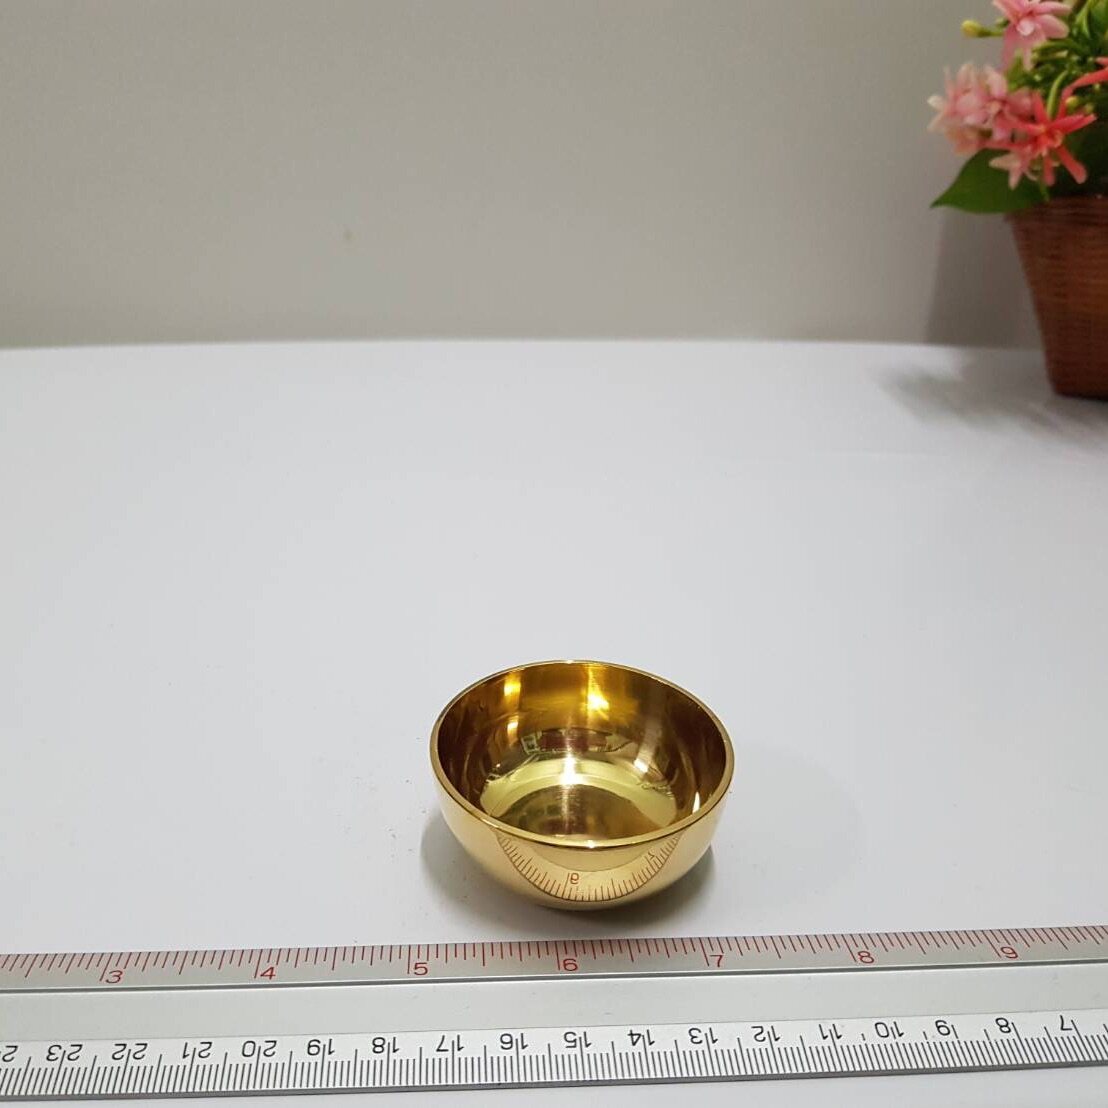 ขันทองเหลือง ใบเล็ก จอกหล่อ ขนาด กว้าง 2นิ้ว สูง 0.9นิ้ว ใบเล็ก